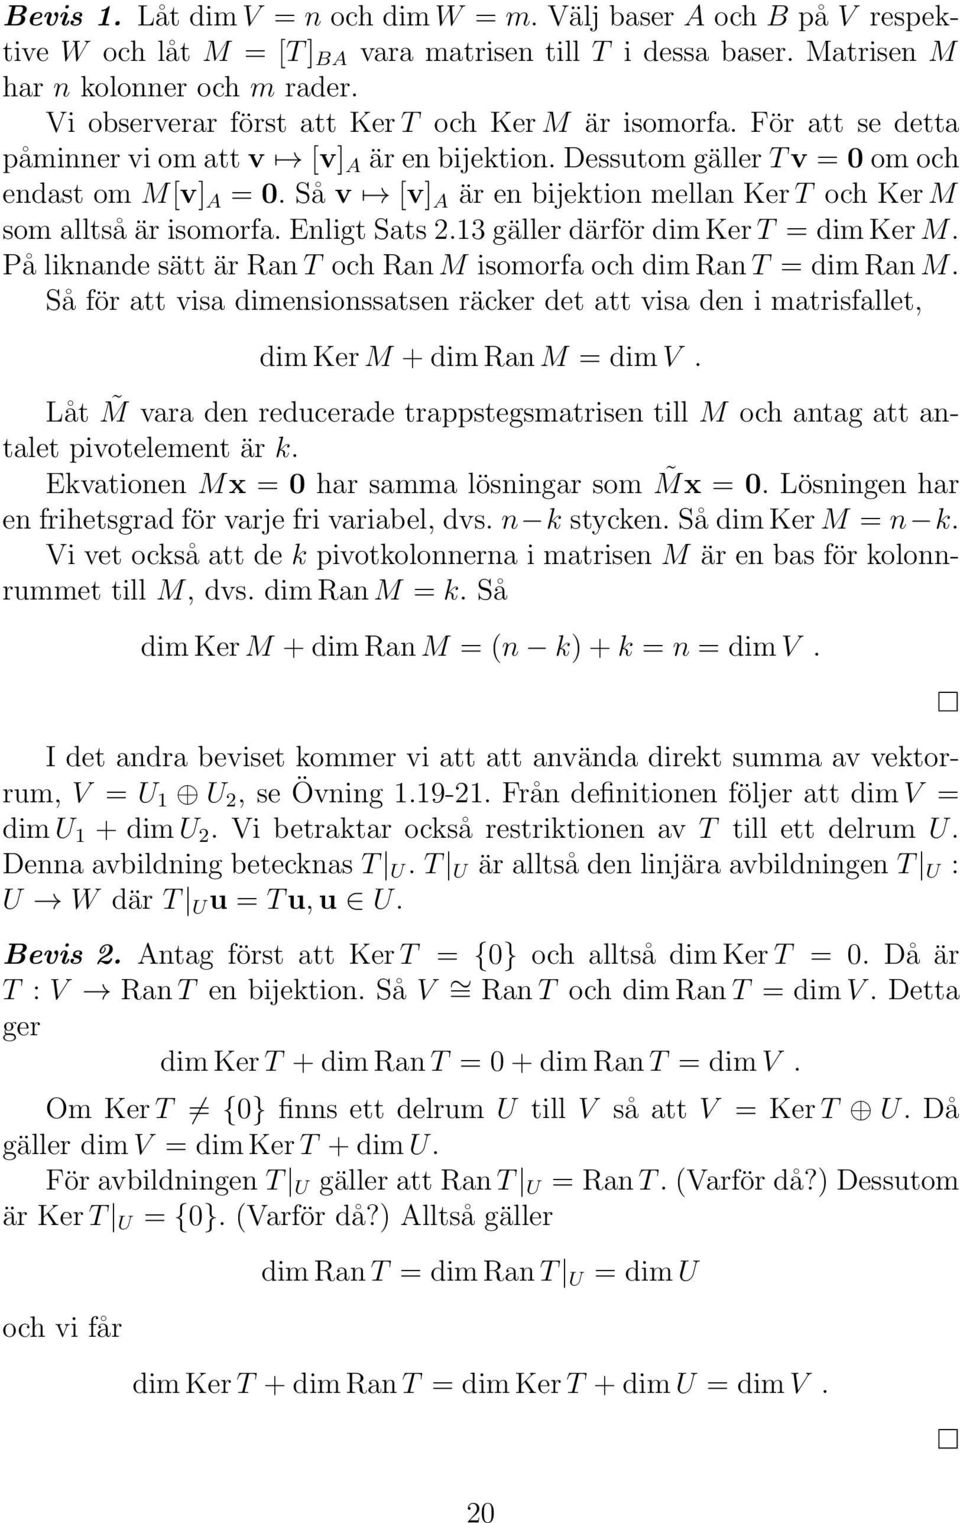 Så v [v] A är en bijektion mellan KerT och KerM som alltsåär isomorfa.enligt Sats 2.13 gäller därför dimkert = dimkerm. På liknande sätt är RanT och RanM isomorfa och dimrant = dimranm.